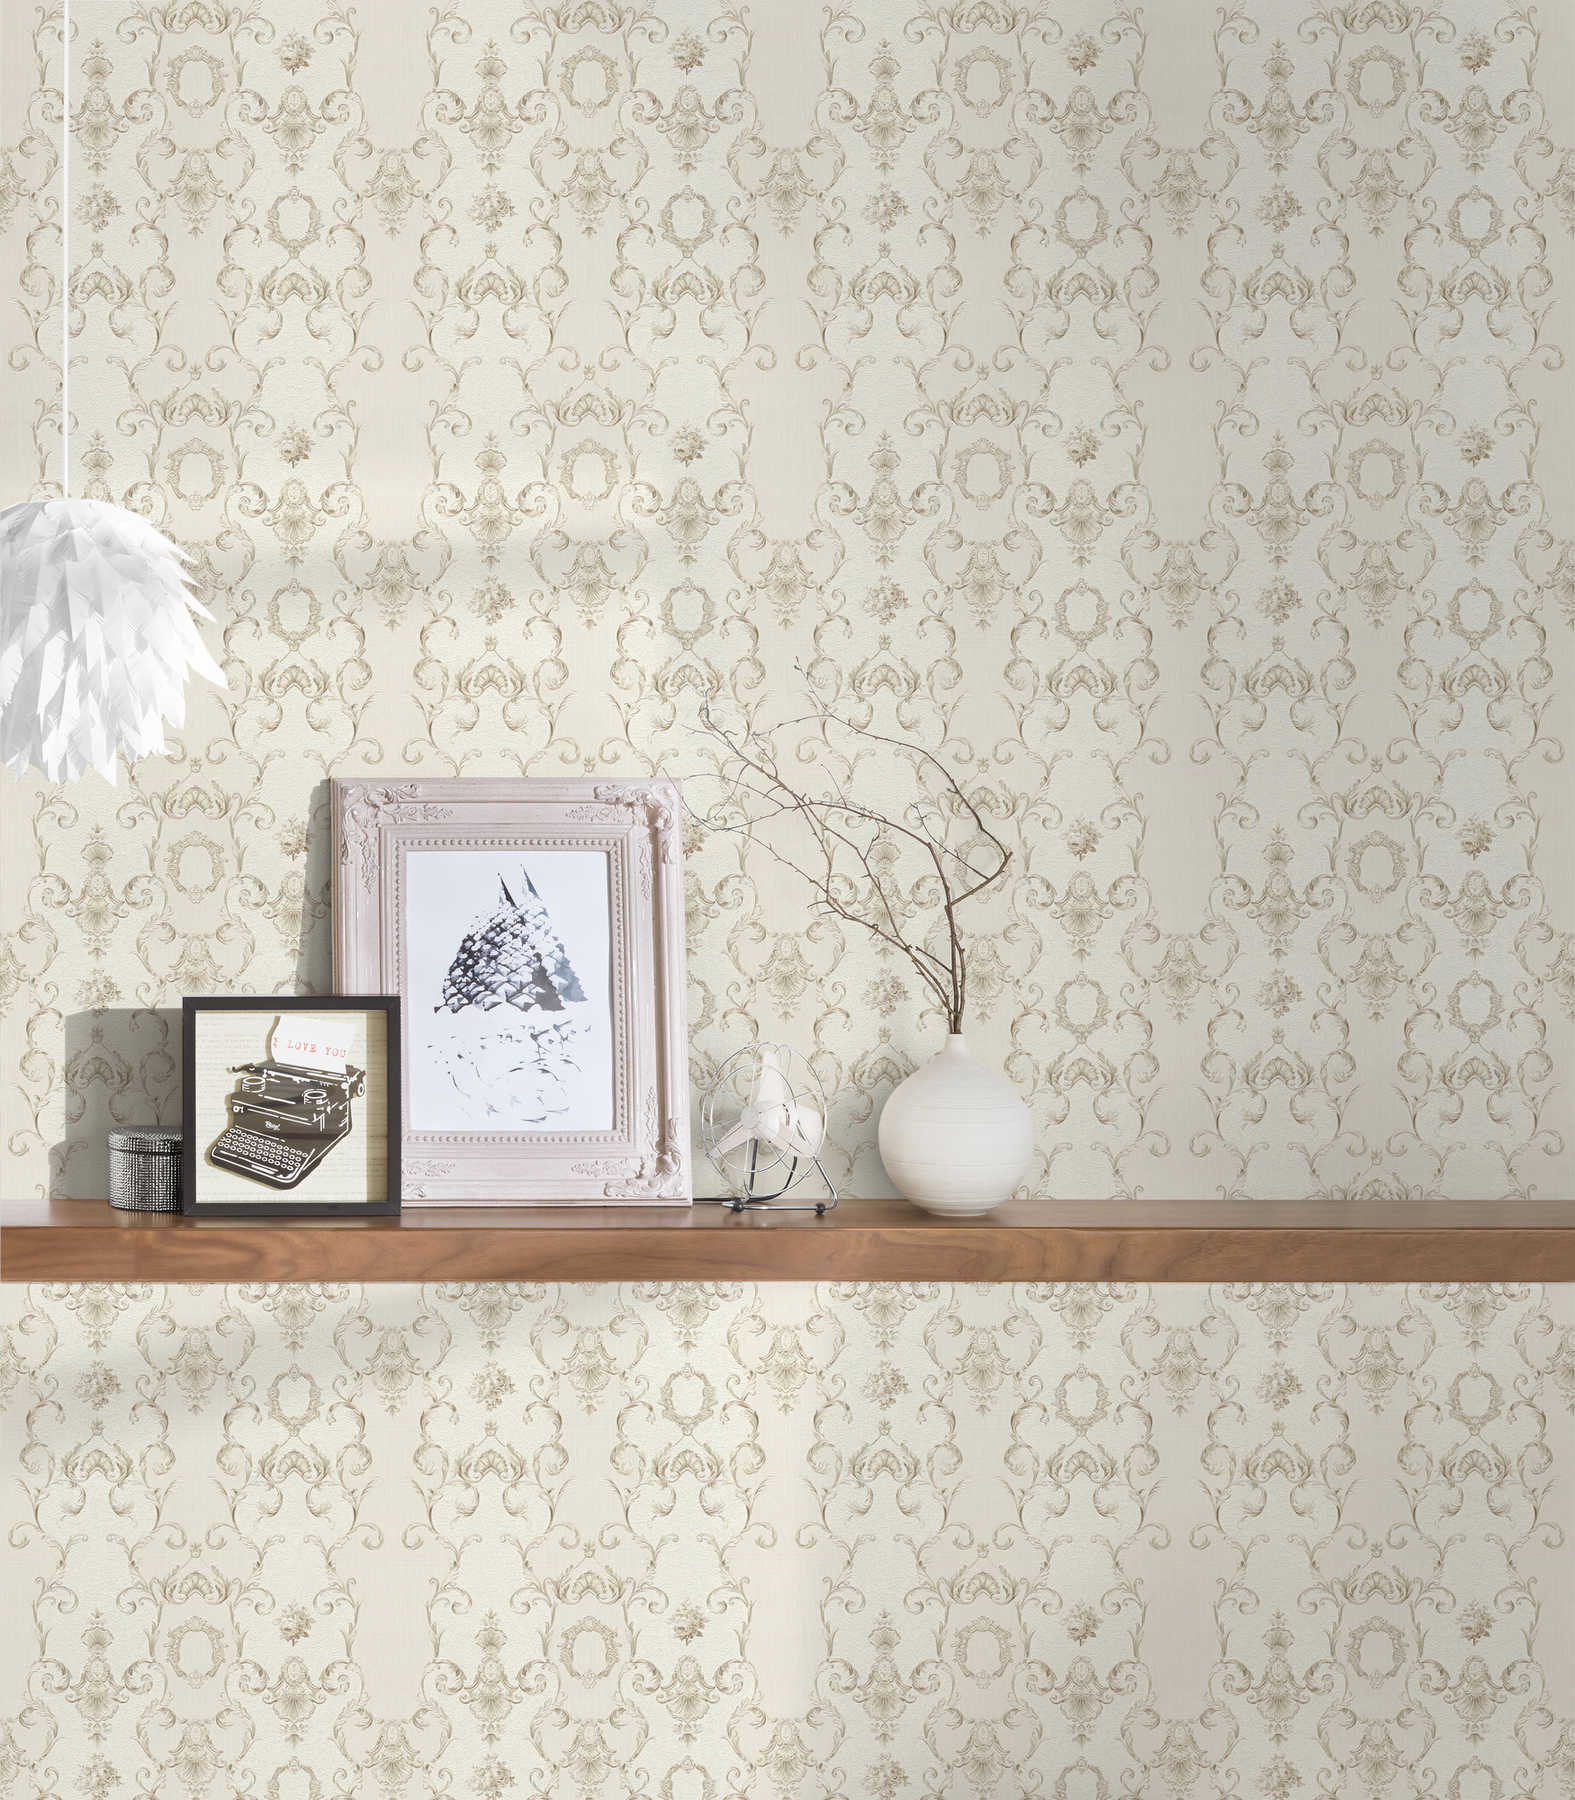             Neo baroque non-woven wallpaper with metallic decor - cream, metallic
        